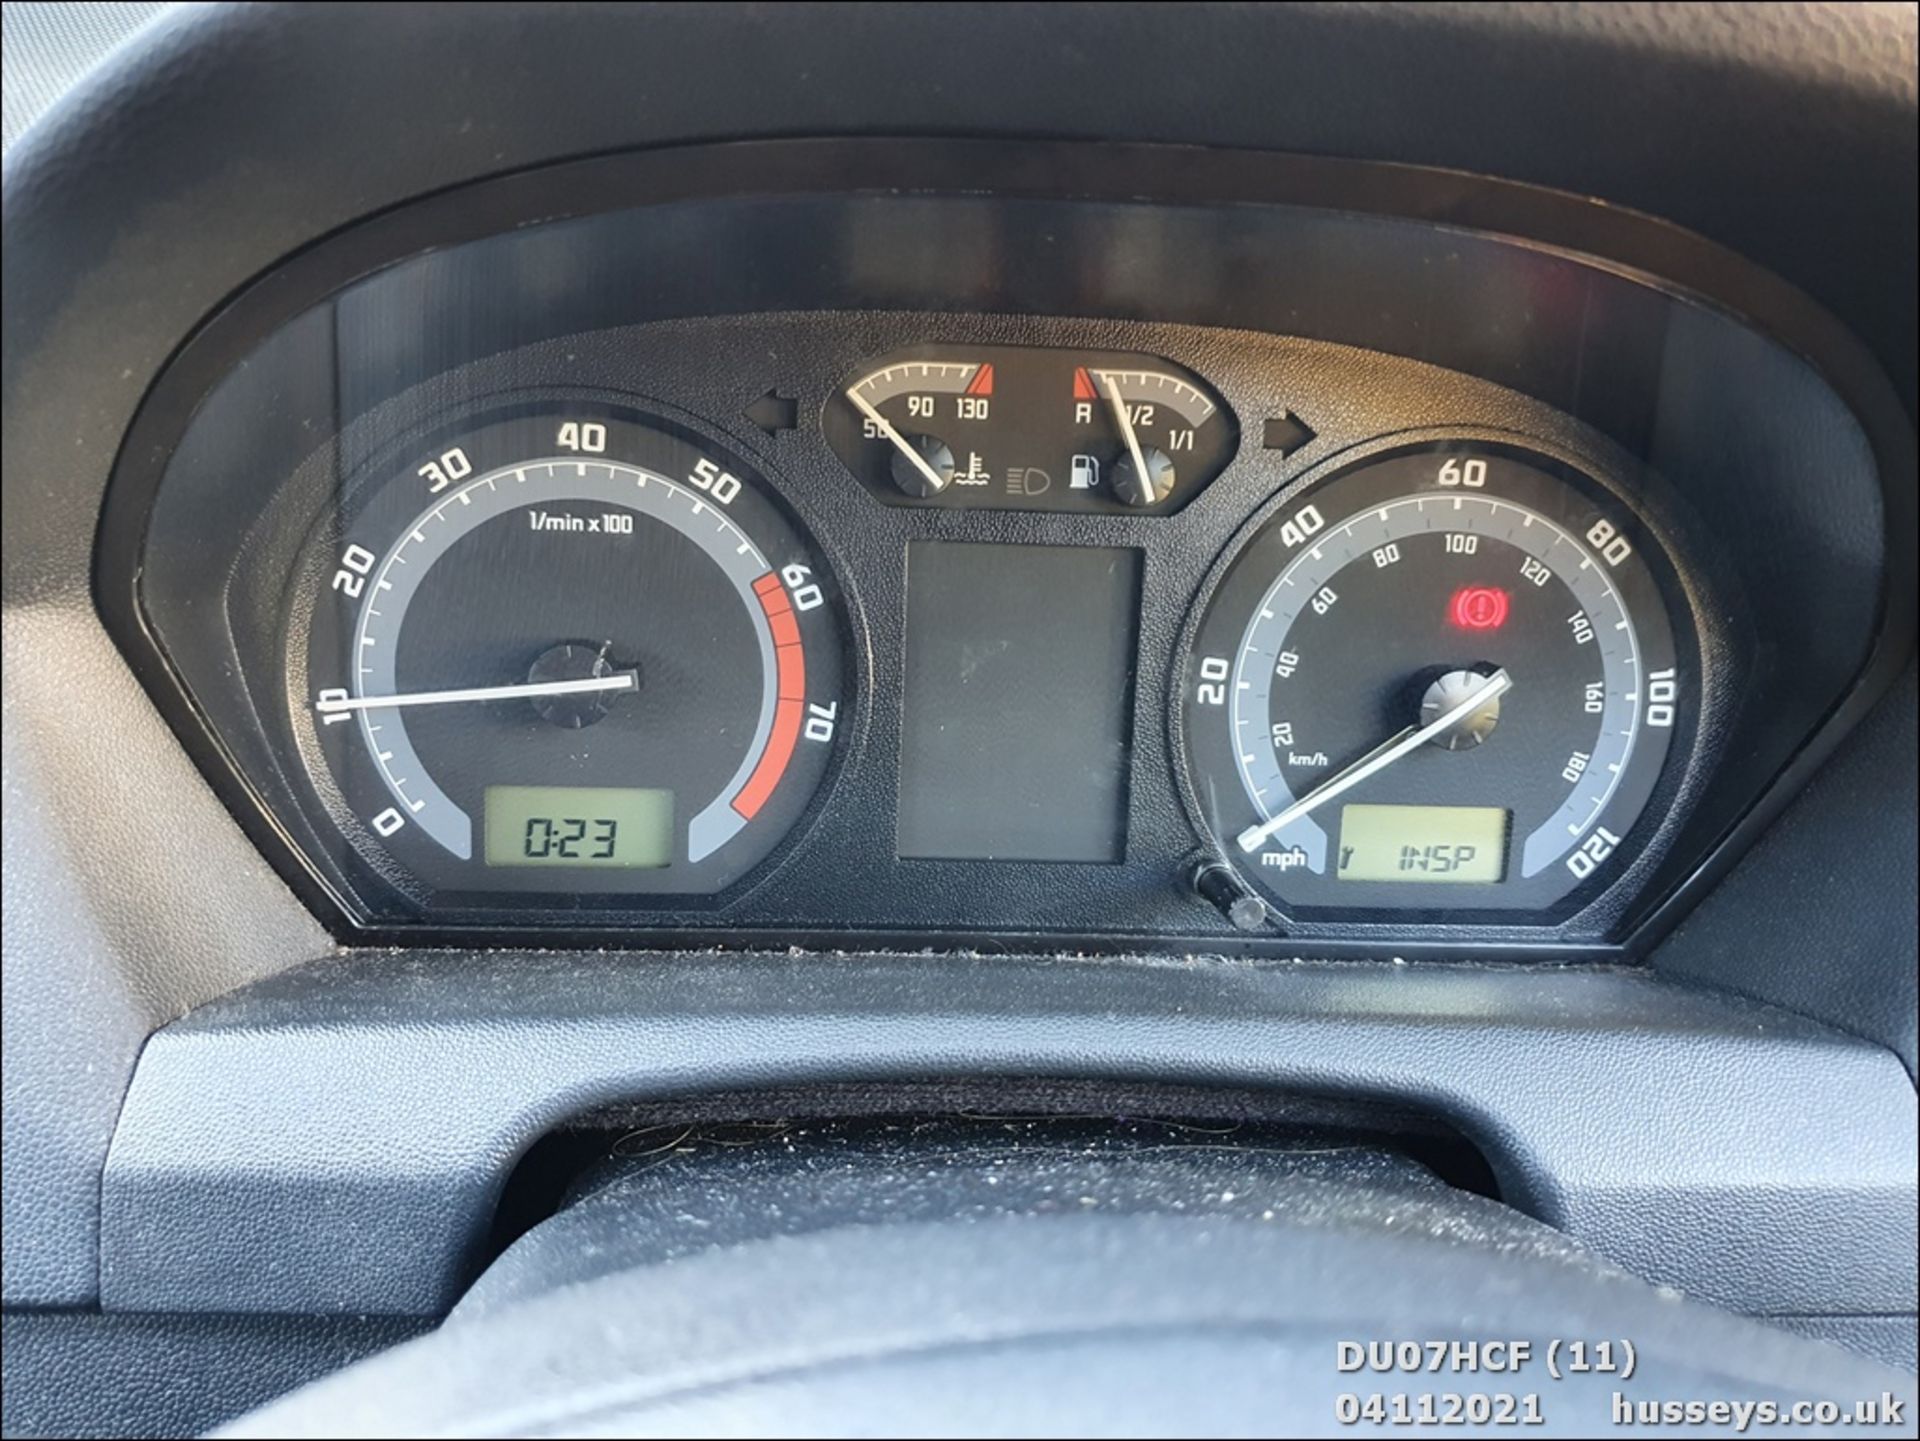 07/07 SKODA FABIA CLASSIC 12V HTP - 1198cc 5dr Hatchback (Grey, 114k) - Image 11 of 16